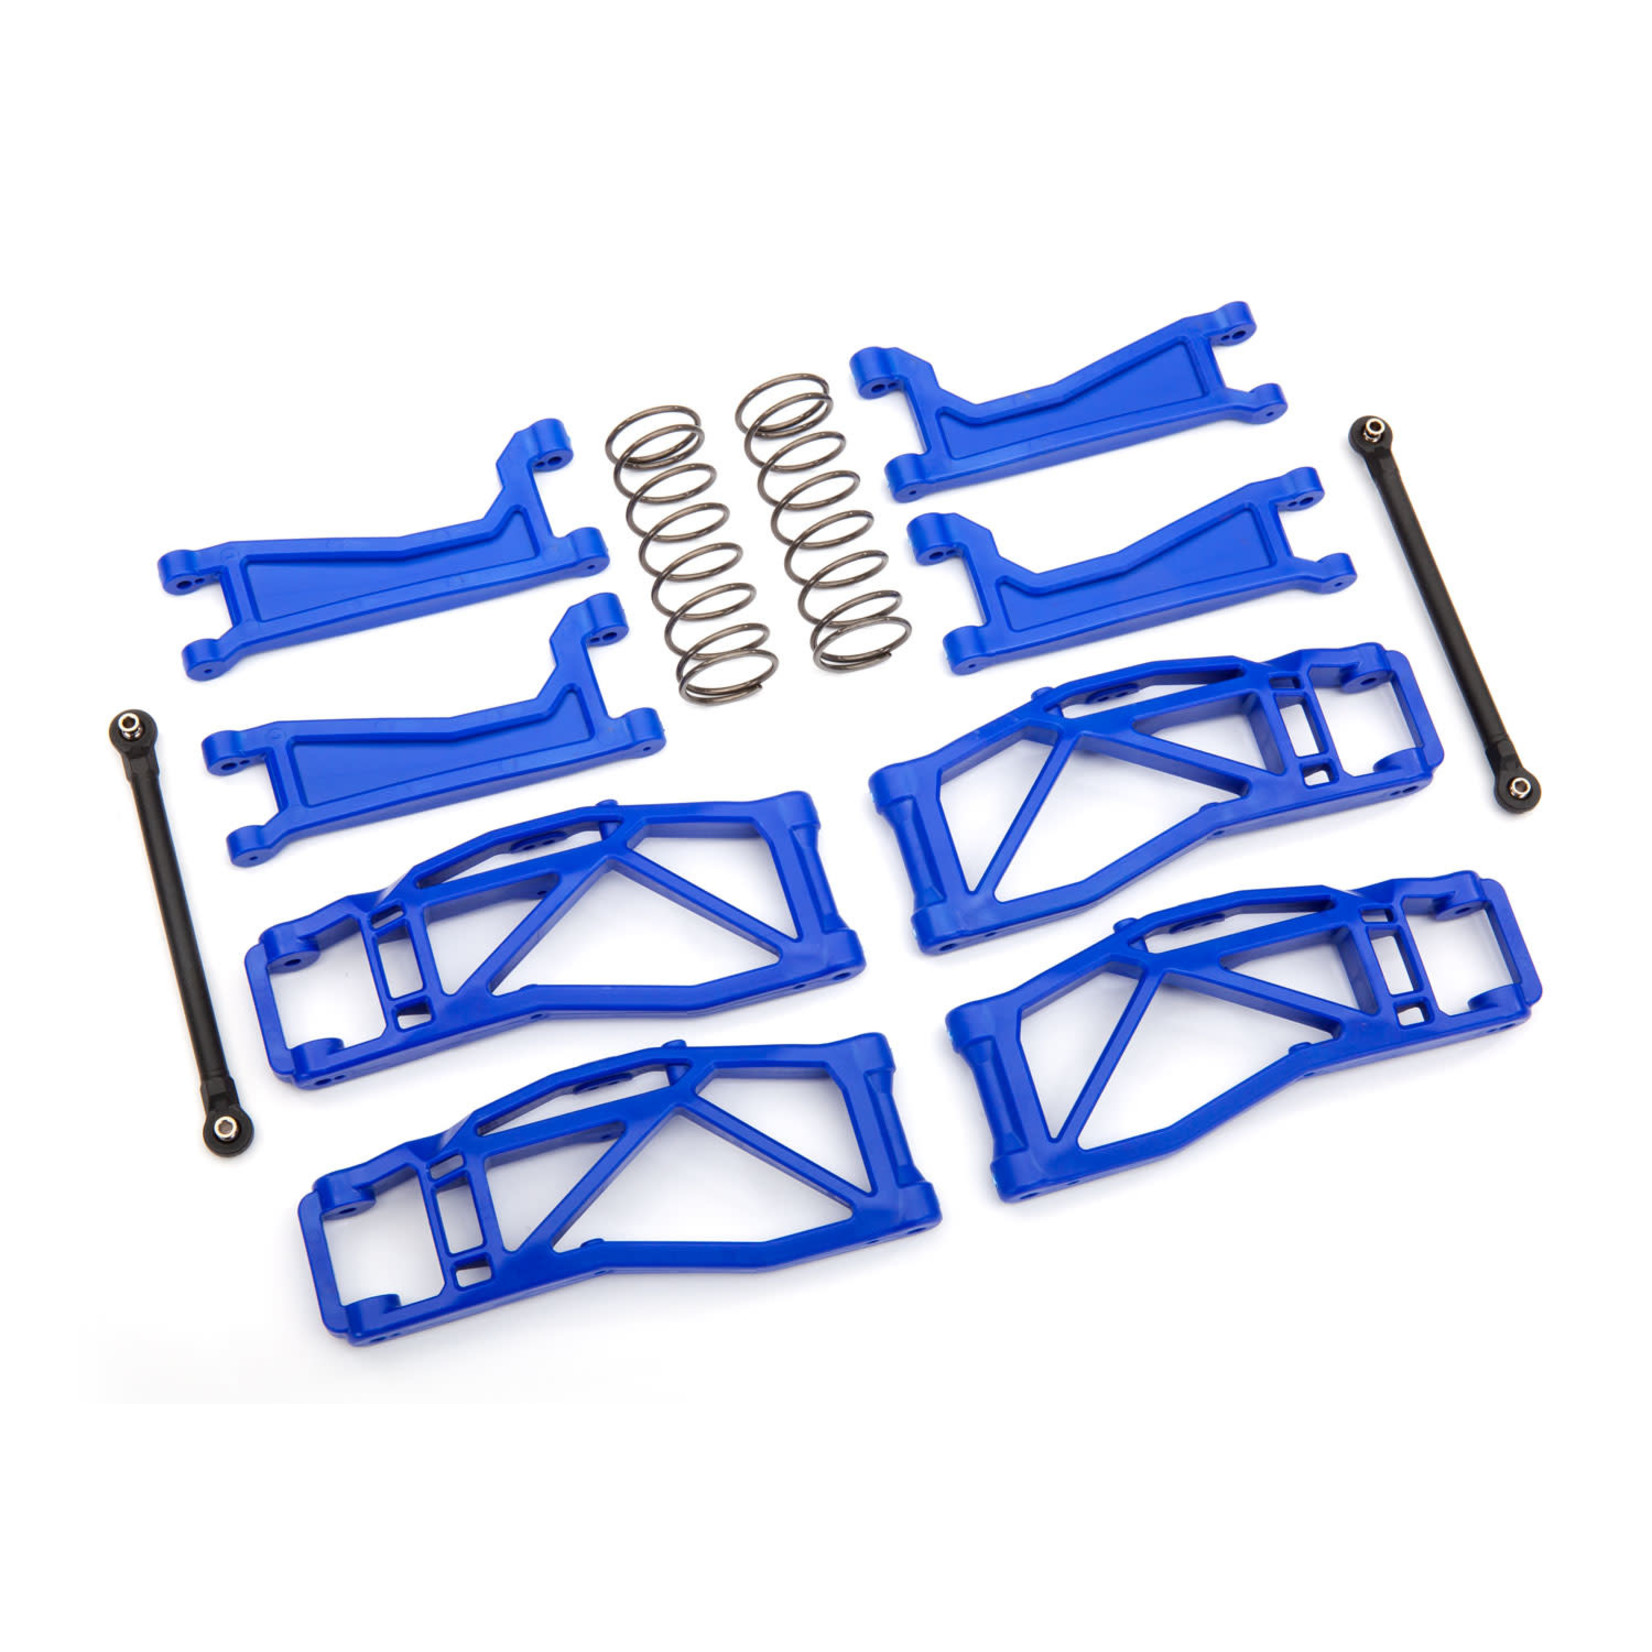 Traxxas Traxxas WideMaxx Suspension Kit (Blue) #8995X